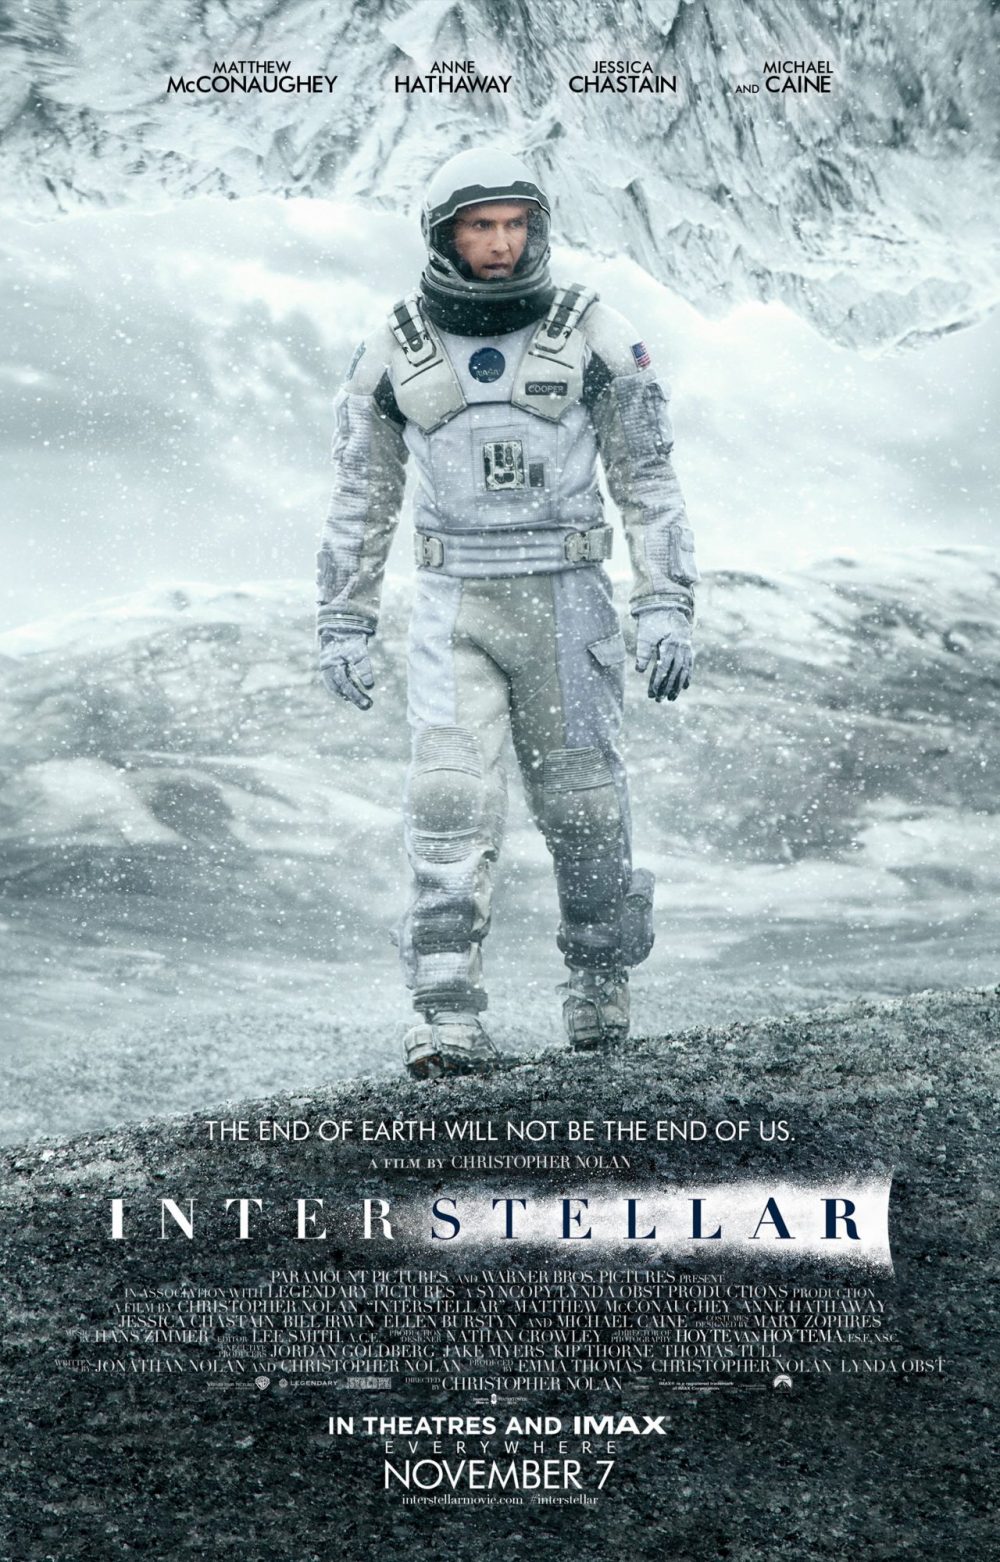 phim interstellar e1588158209681 - Interstellar: Một bộ phim viễn tưởng xuất sắc về tình cảm gia đình